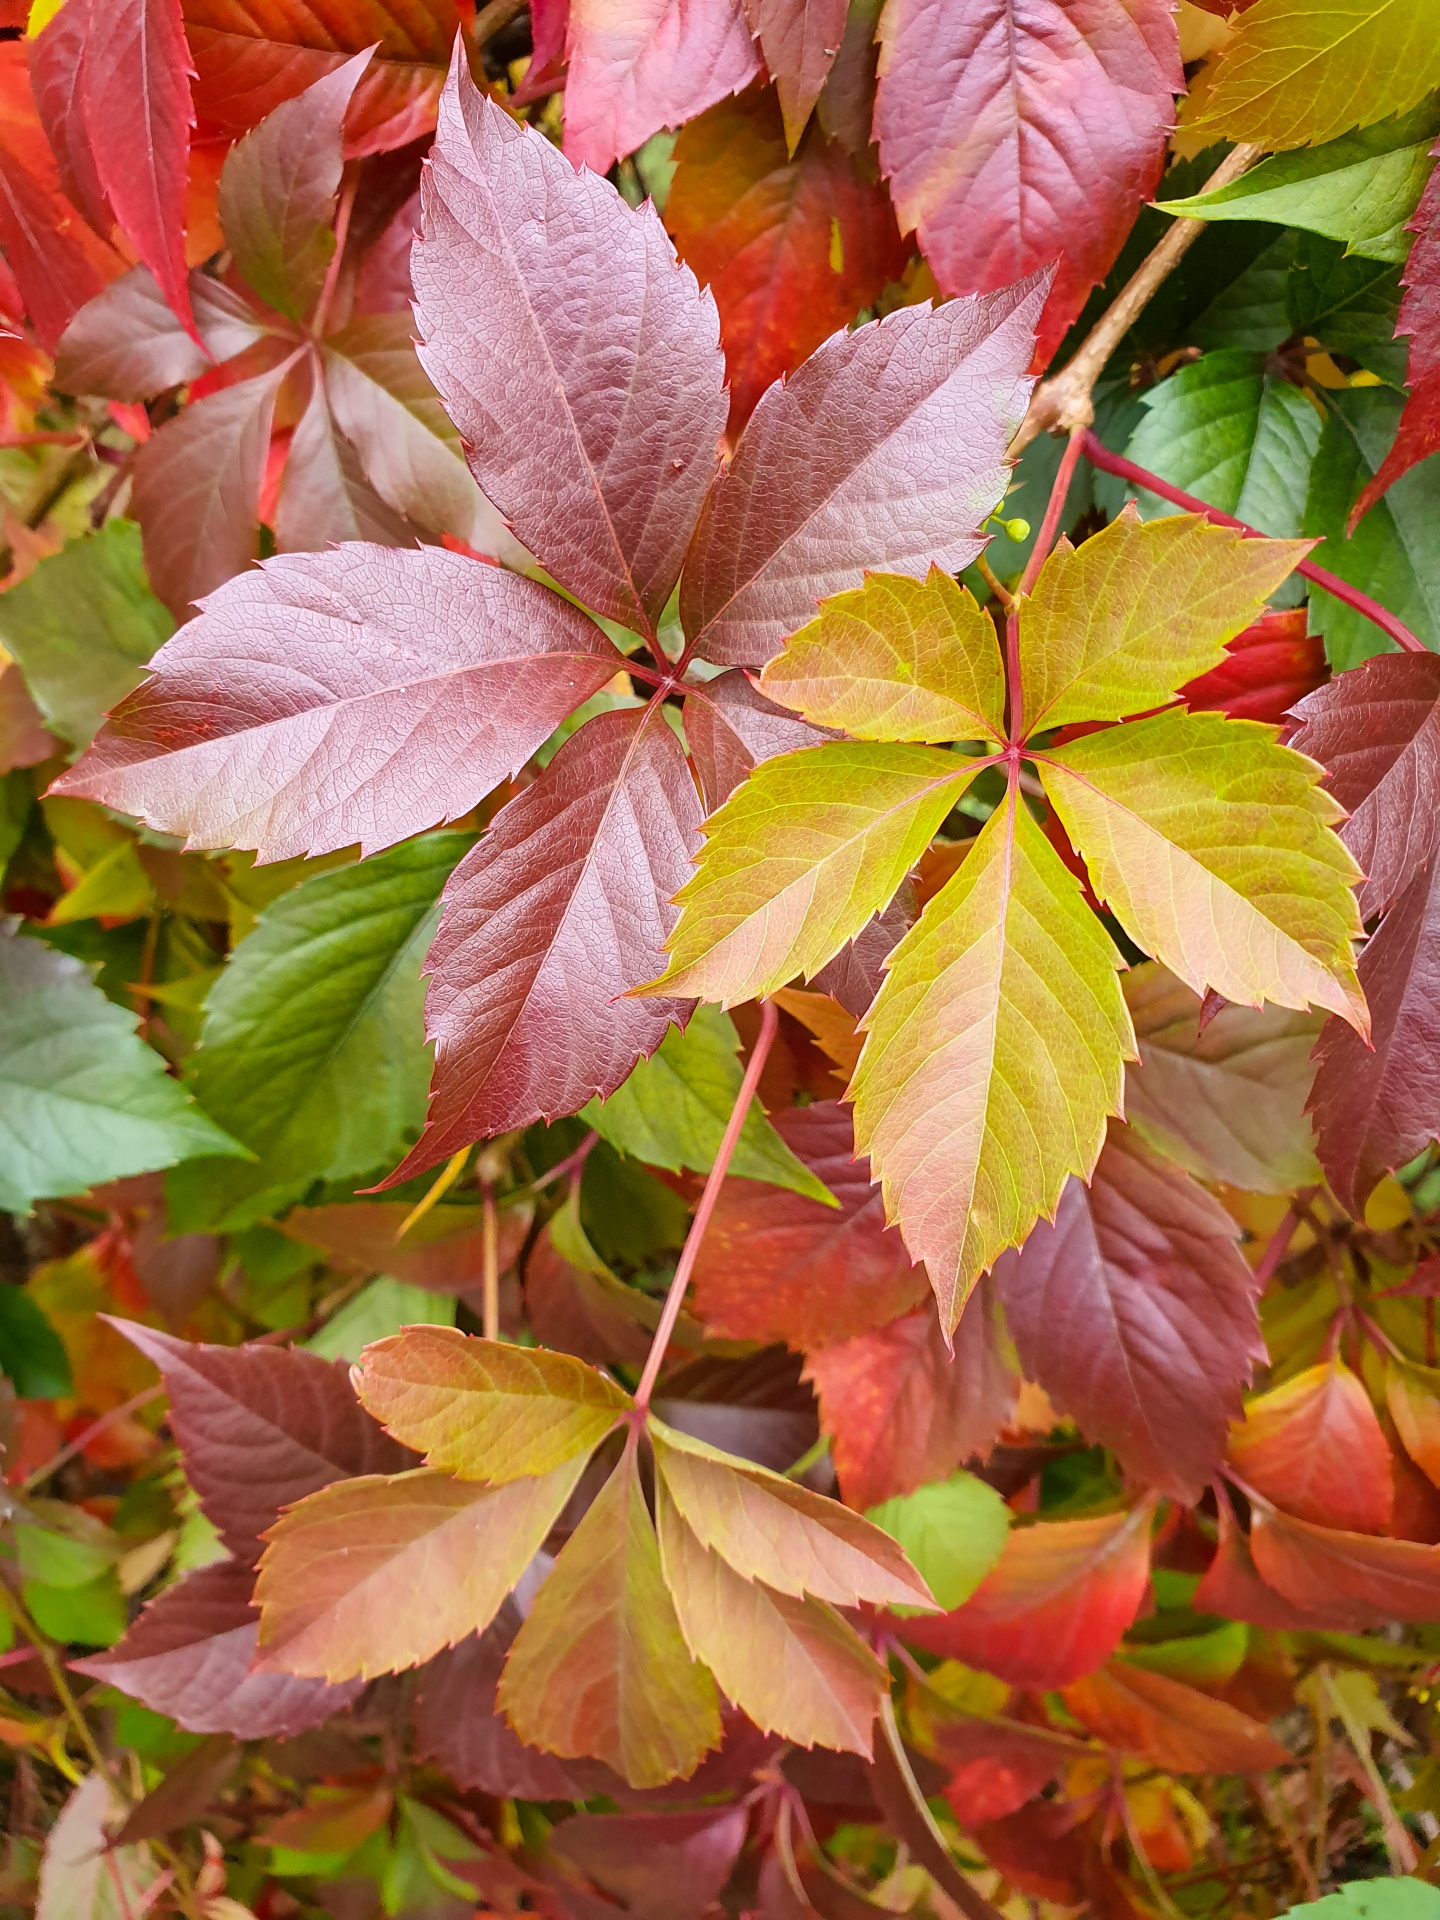 Colorful fall leaves foliage